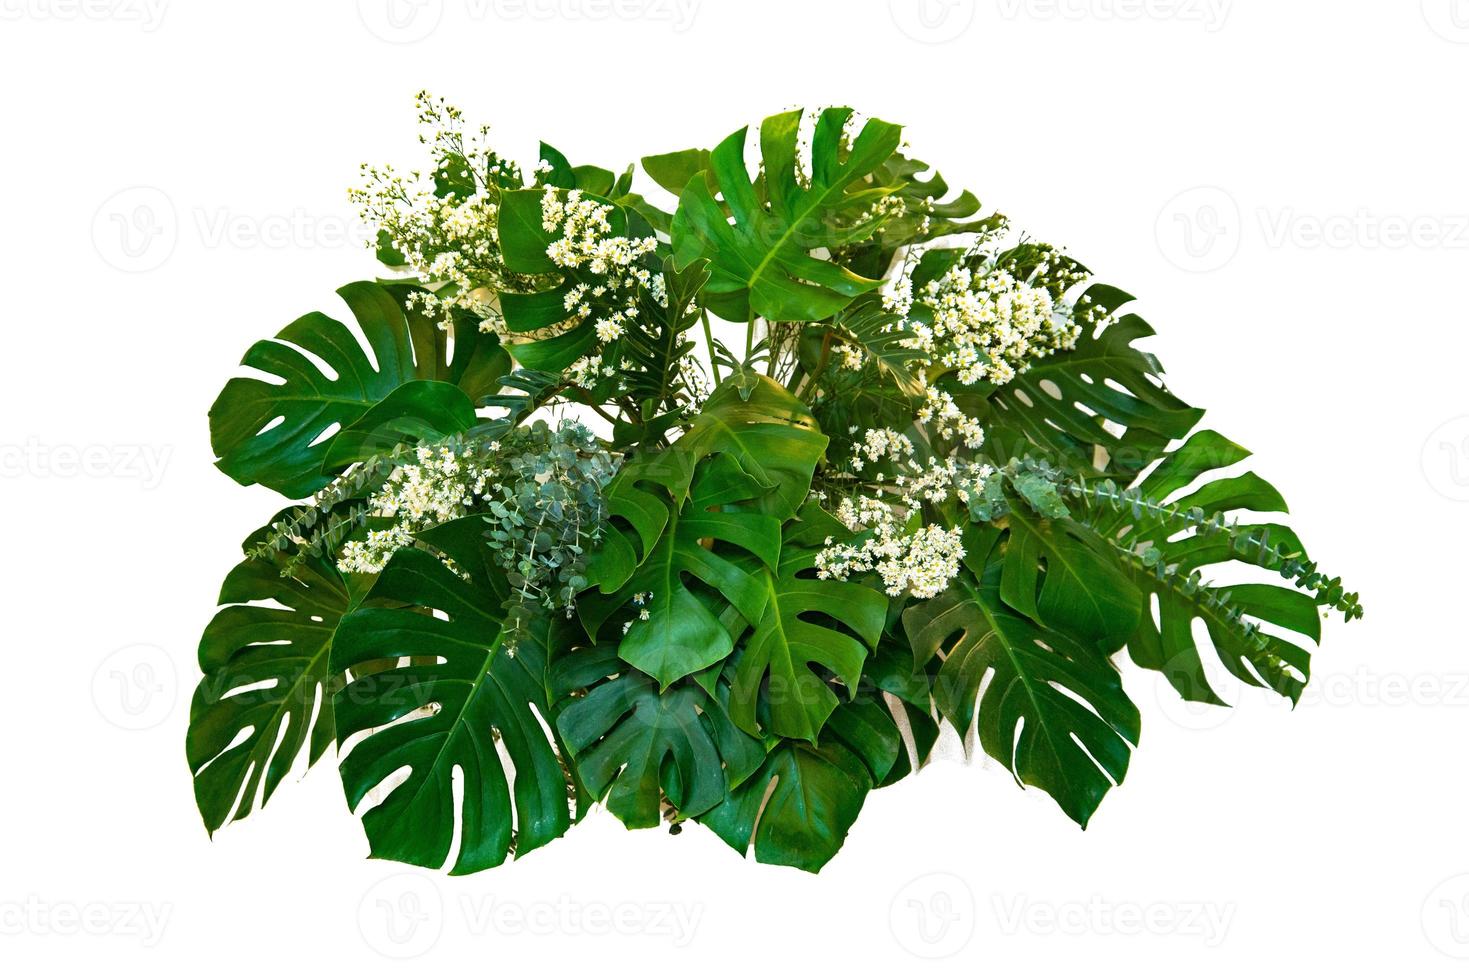 Monsterblätter verwendet in modernen Designs tropische Blätter Laub Pflanze Busch Blumenarrangement Natur Hintergrund isoliert foto